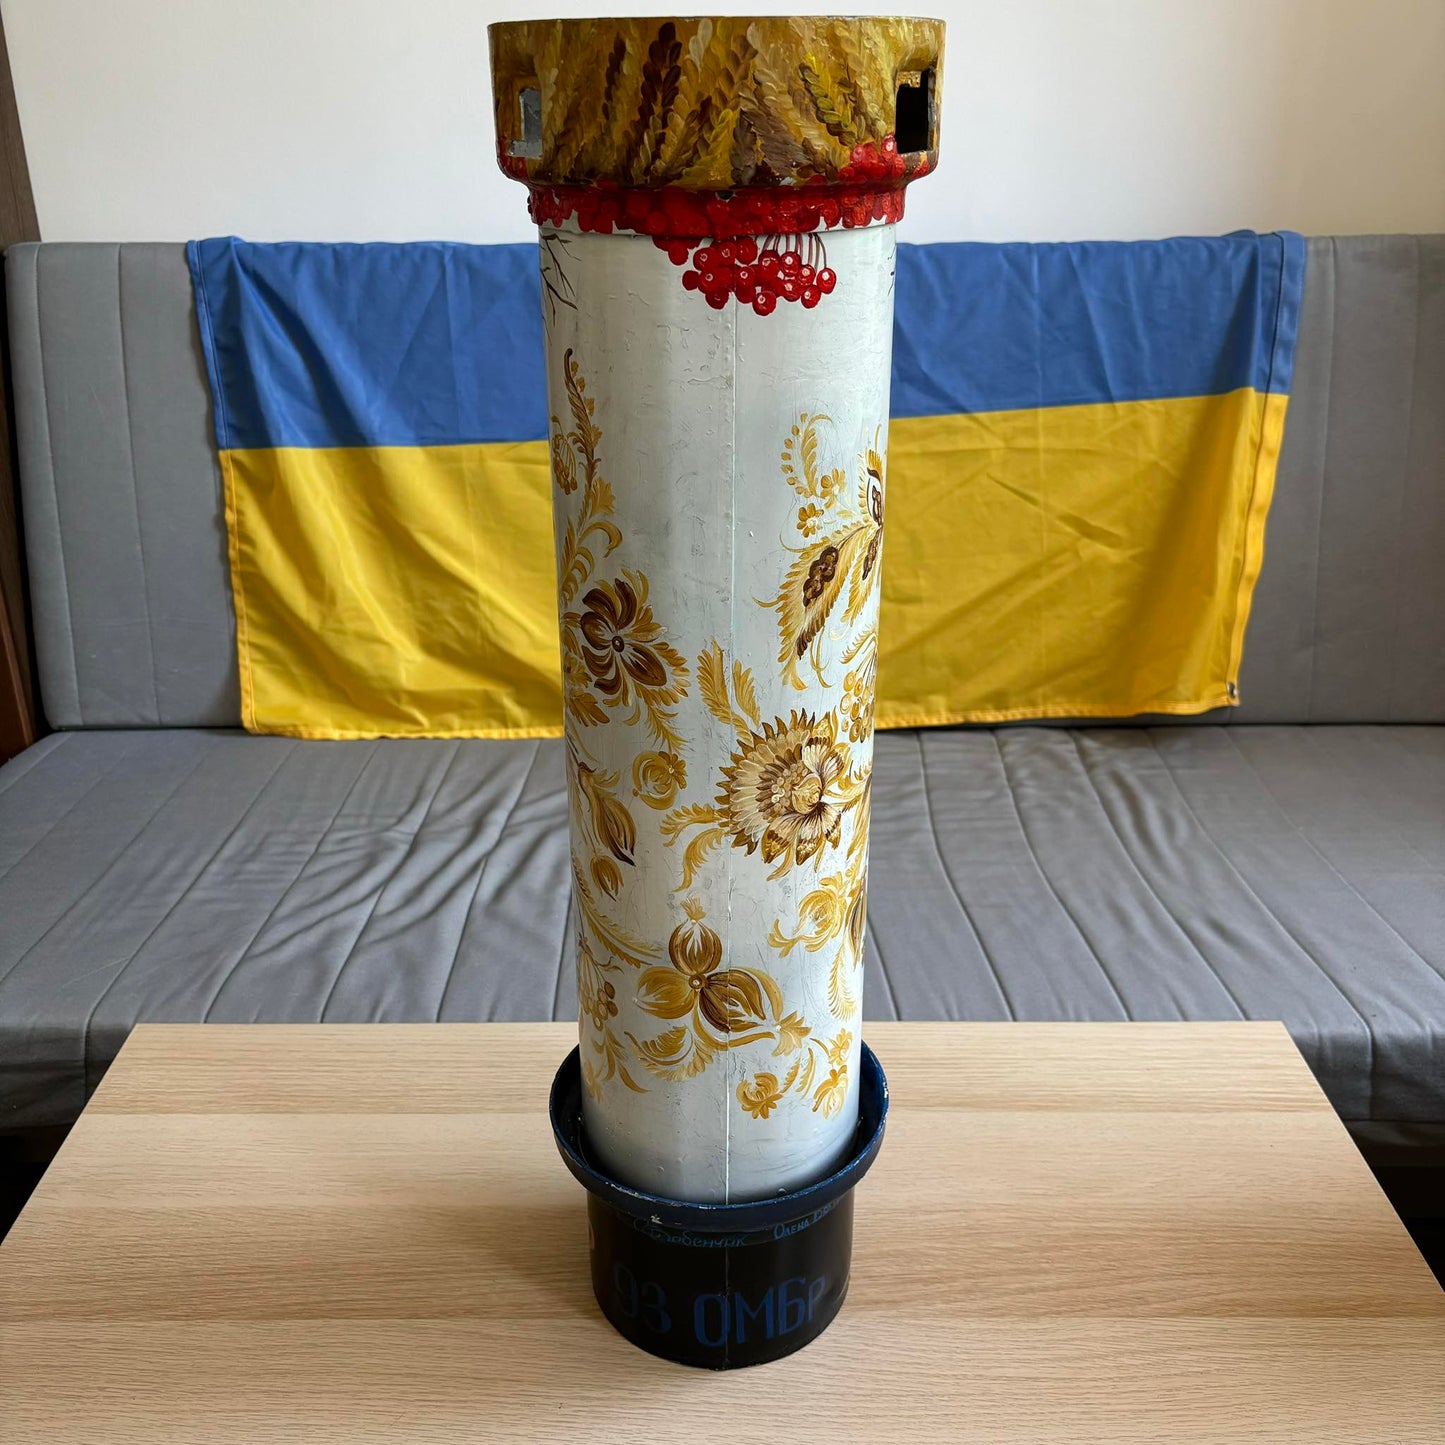 Contenitore Shell da 155 mm dipinto (omaggio alla 93a brigata "Kholodnyi Yar")